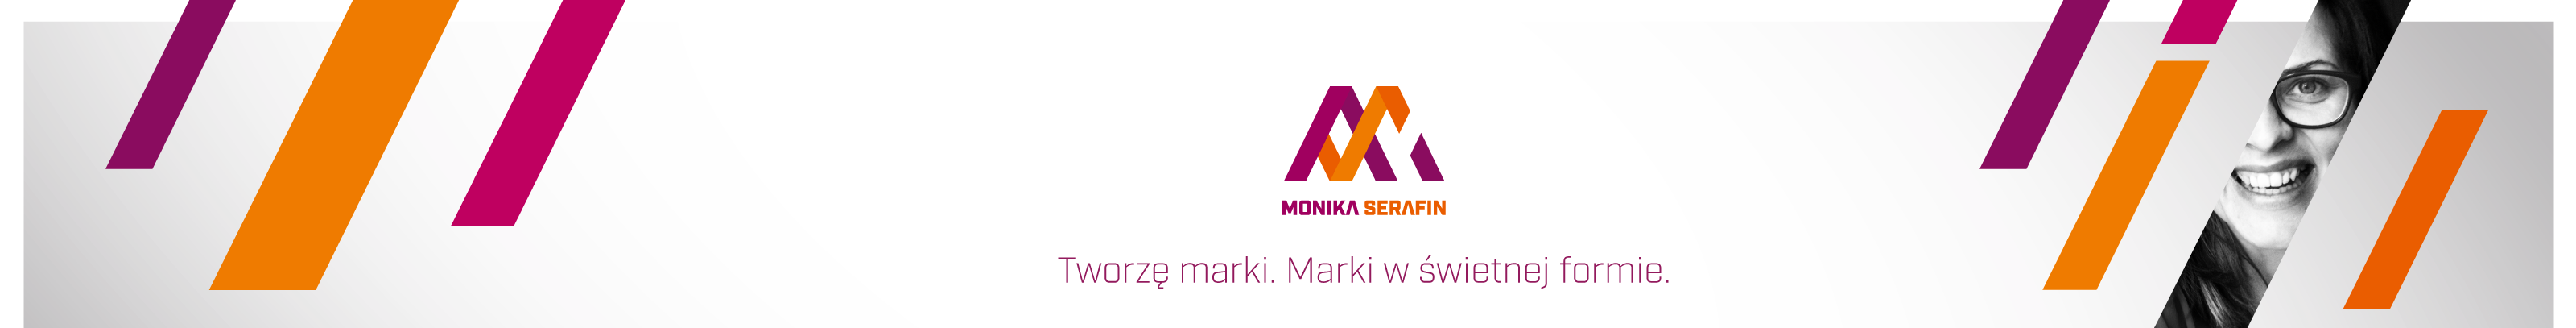 Profielbanner van Monika Serafin